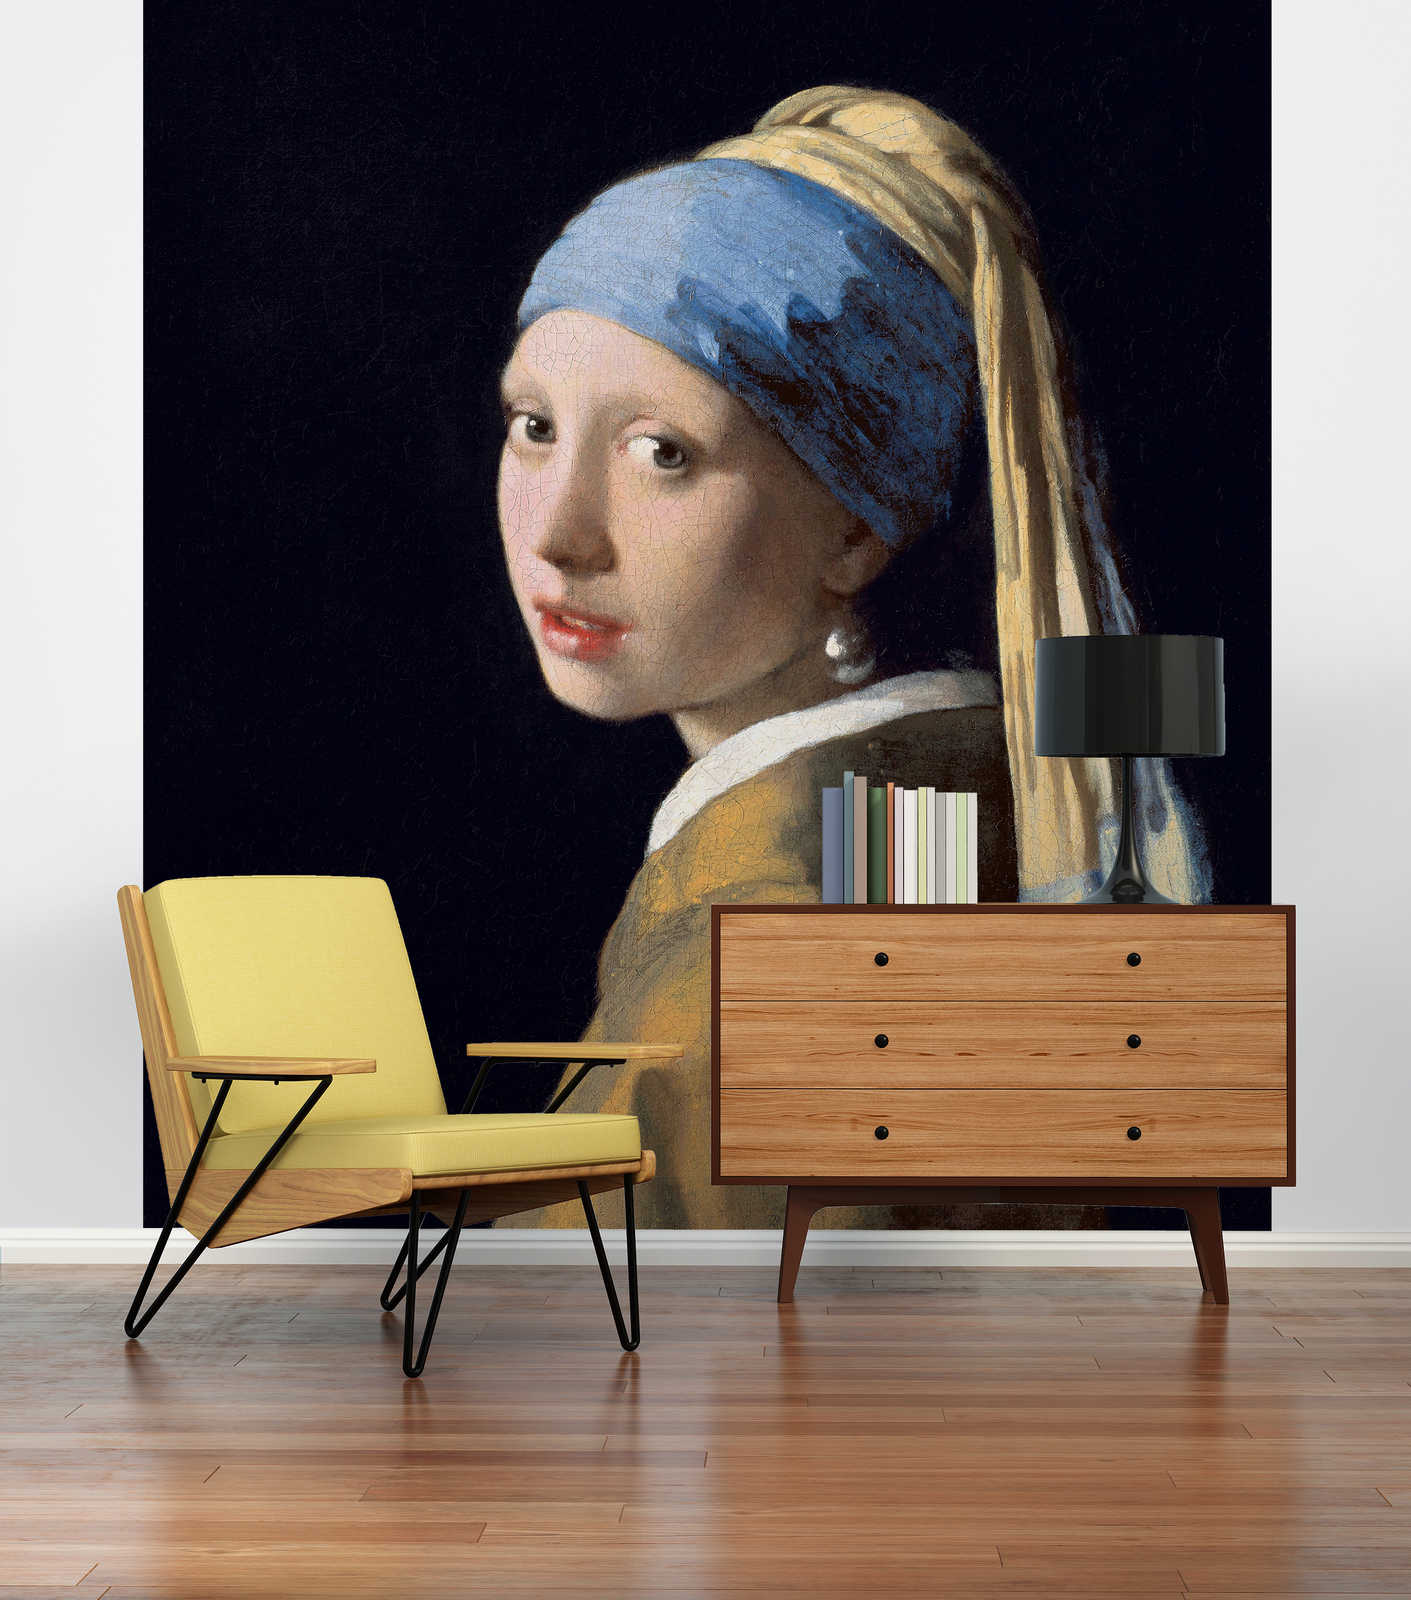             Mural "La joven del pendiente de perla" de Jan Vermeer
        